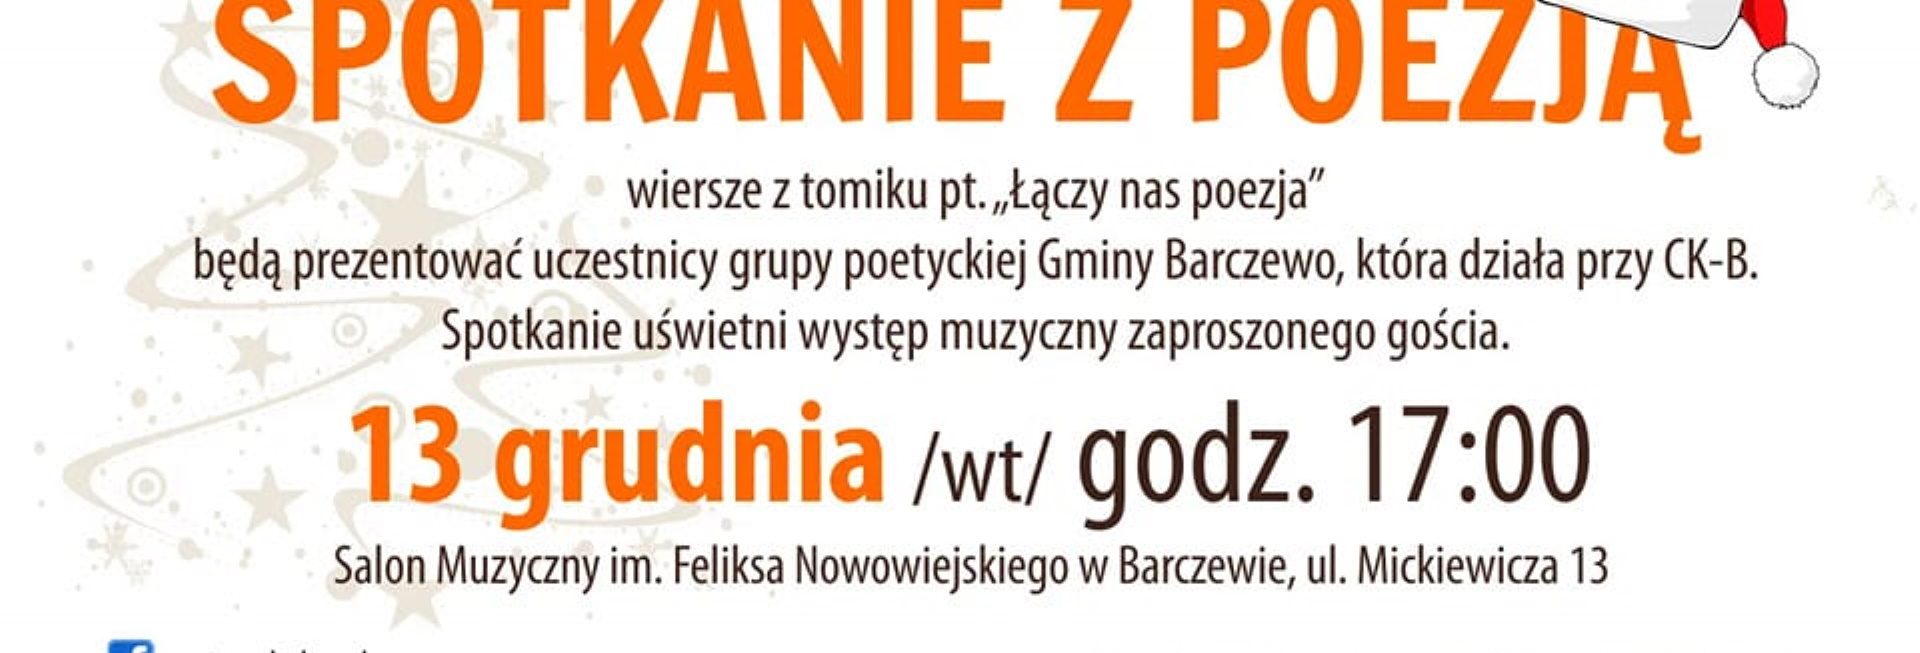 Plakat zapraszający do Barczewa na Przedświąteczne Spotkanie z Poezją Barczewo 2022.